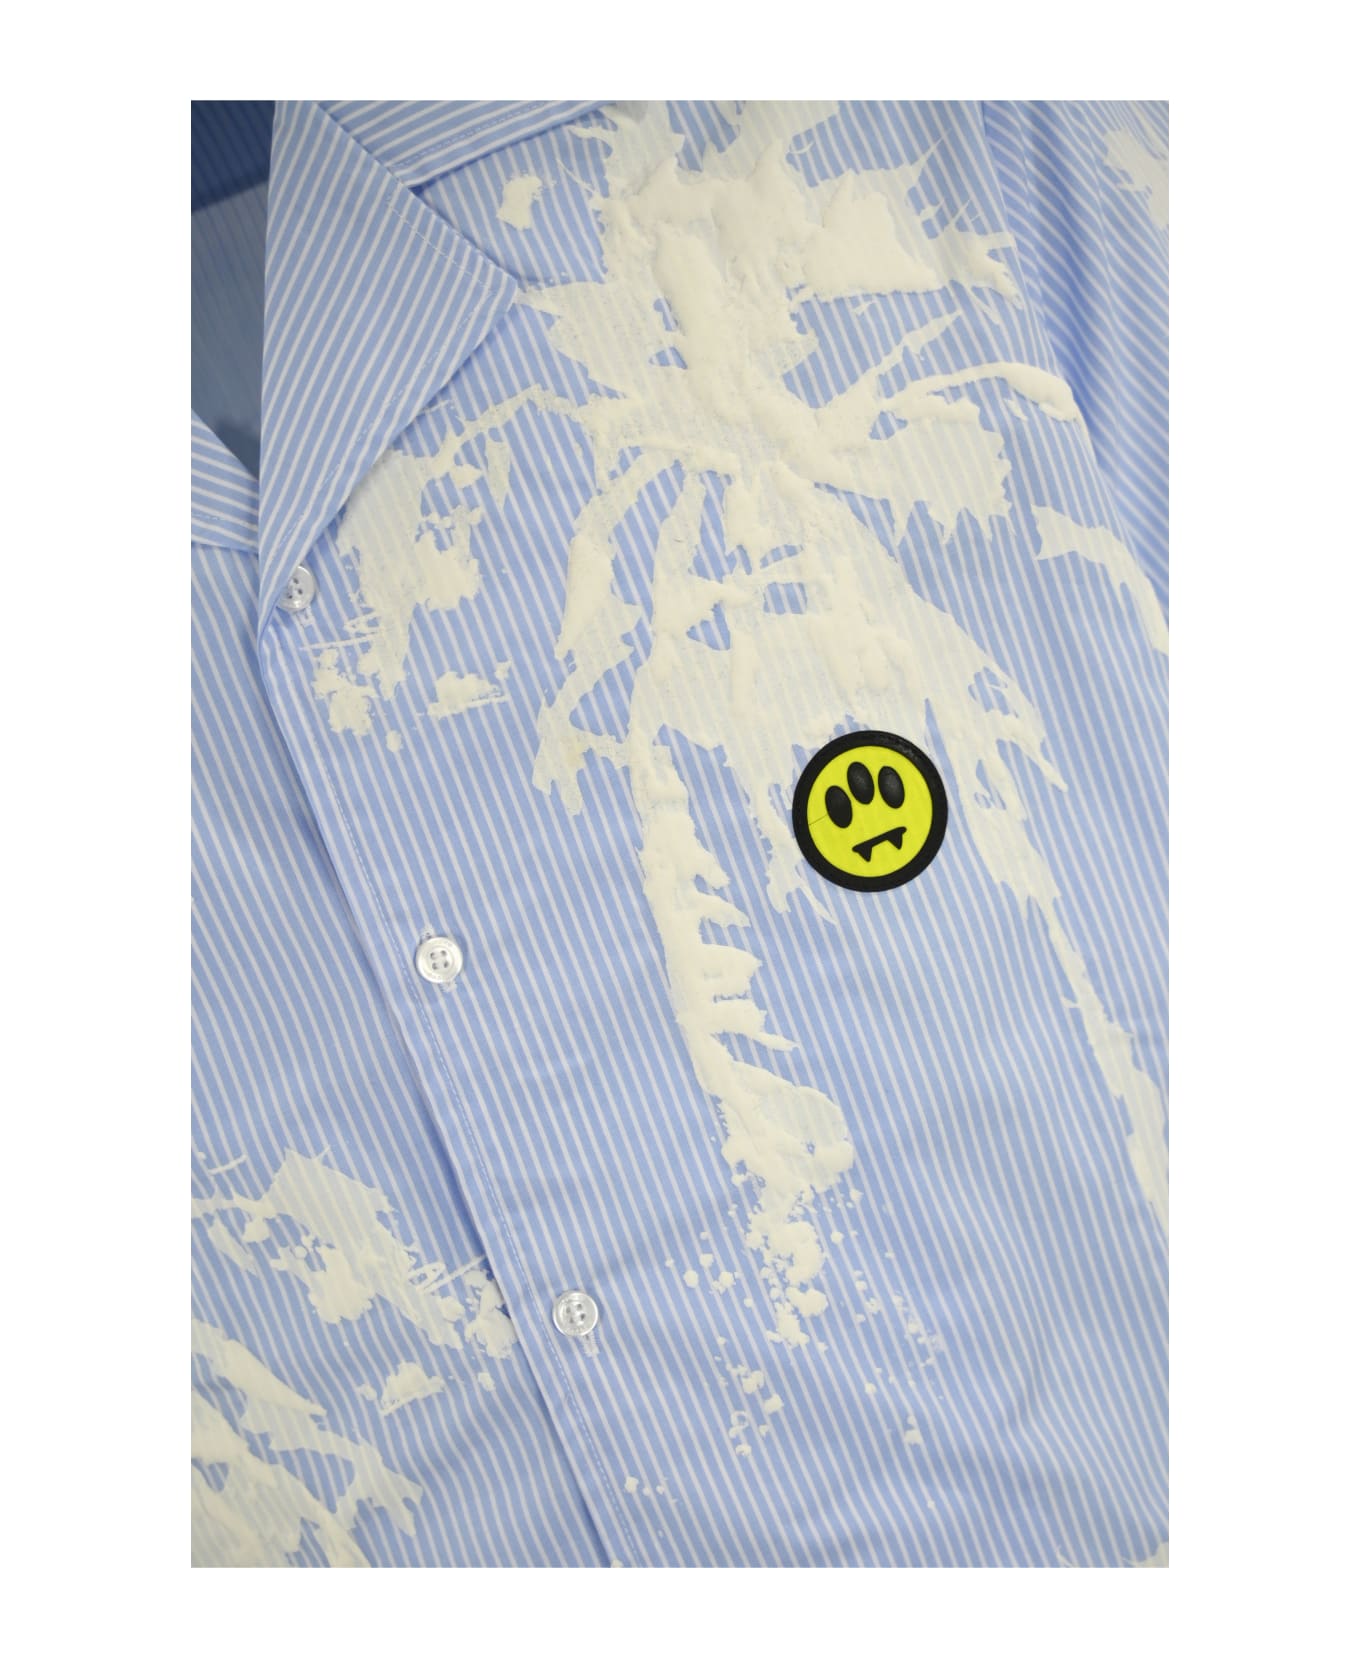 Barrow Camicia In Popeline Con Stampa Palm - CELESTE/LIGHT BLUE